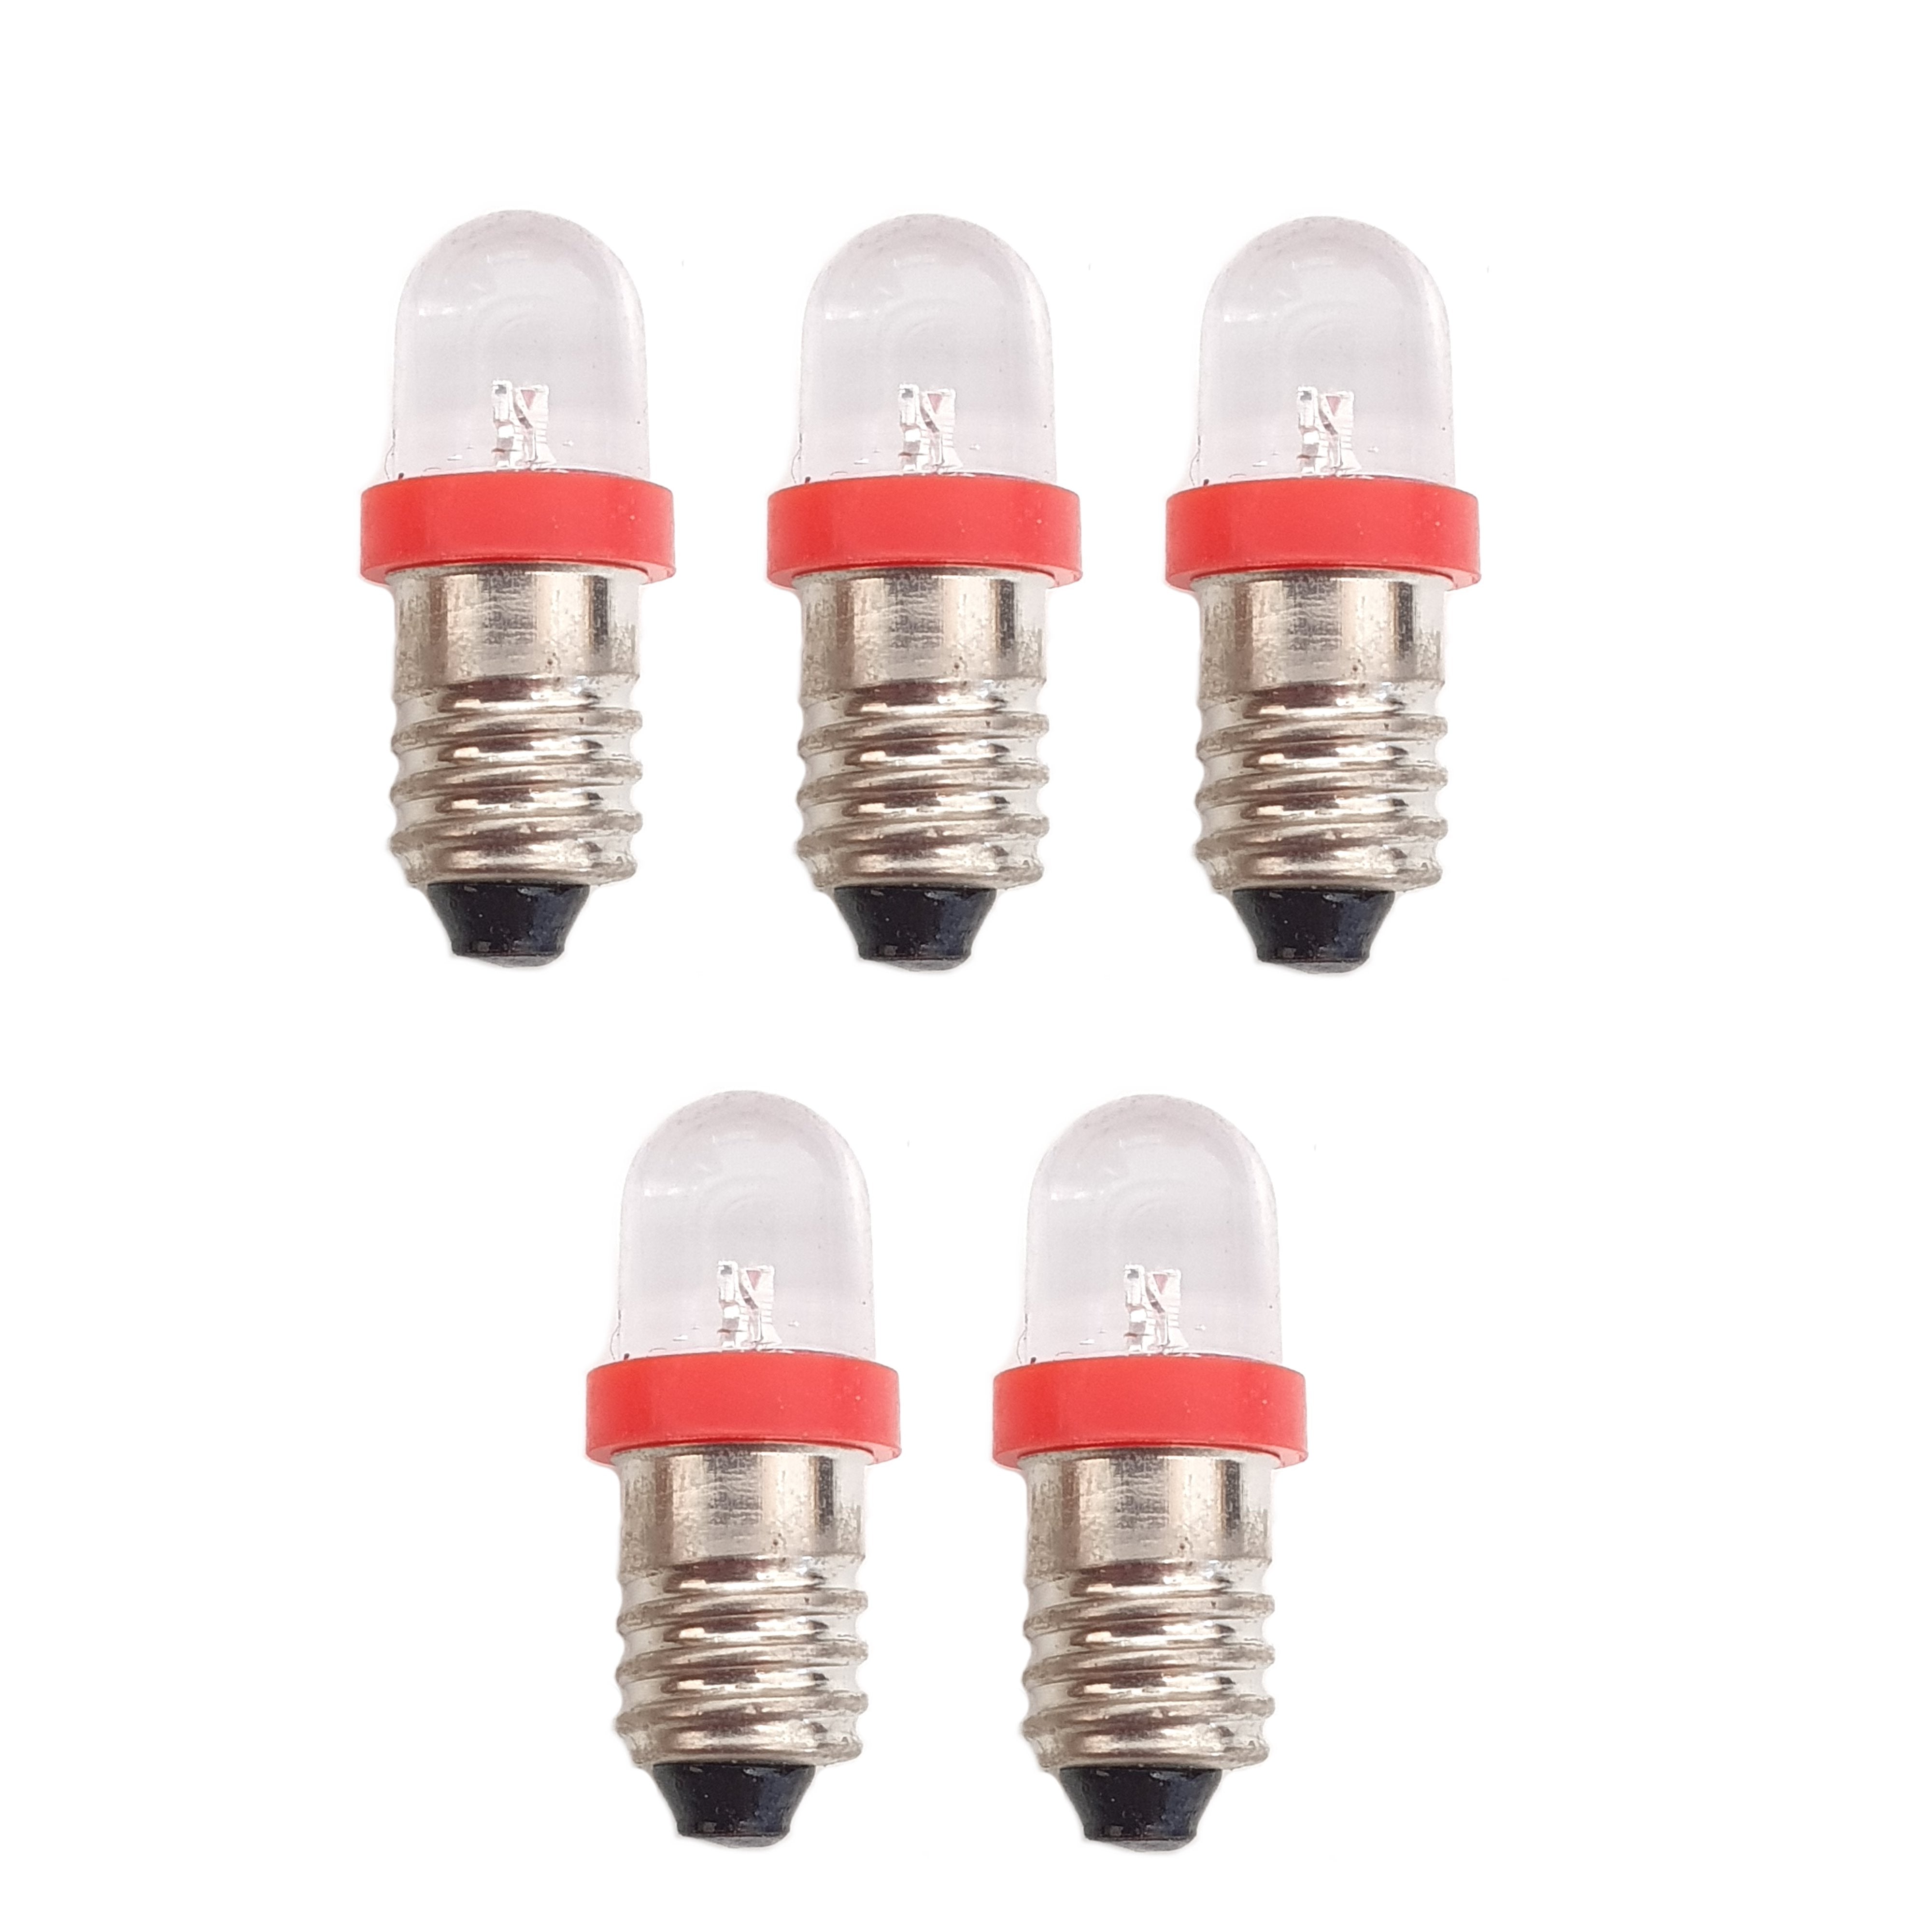 5 x 6V MES E10 LED Lamp Bulb 10mm Diameter - Red